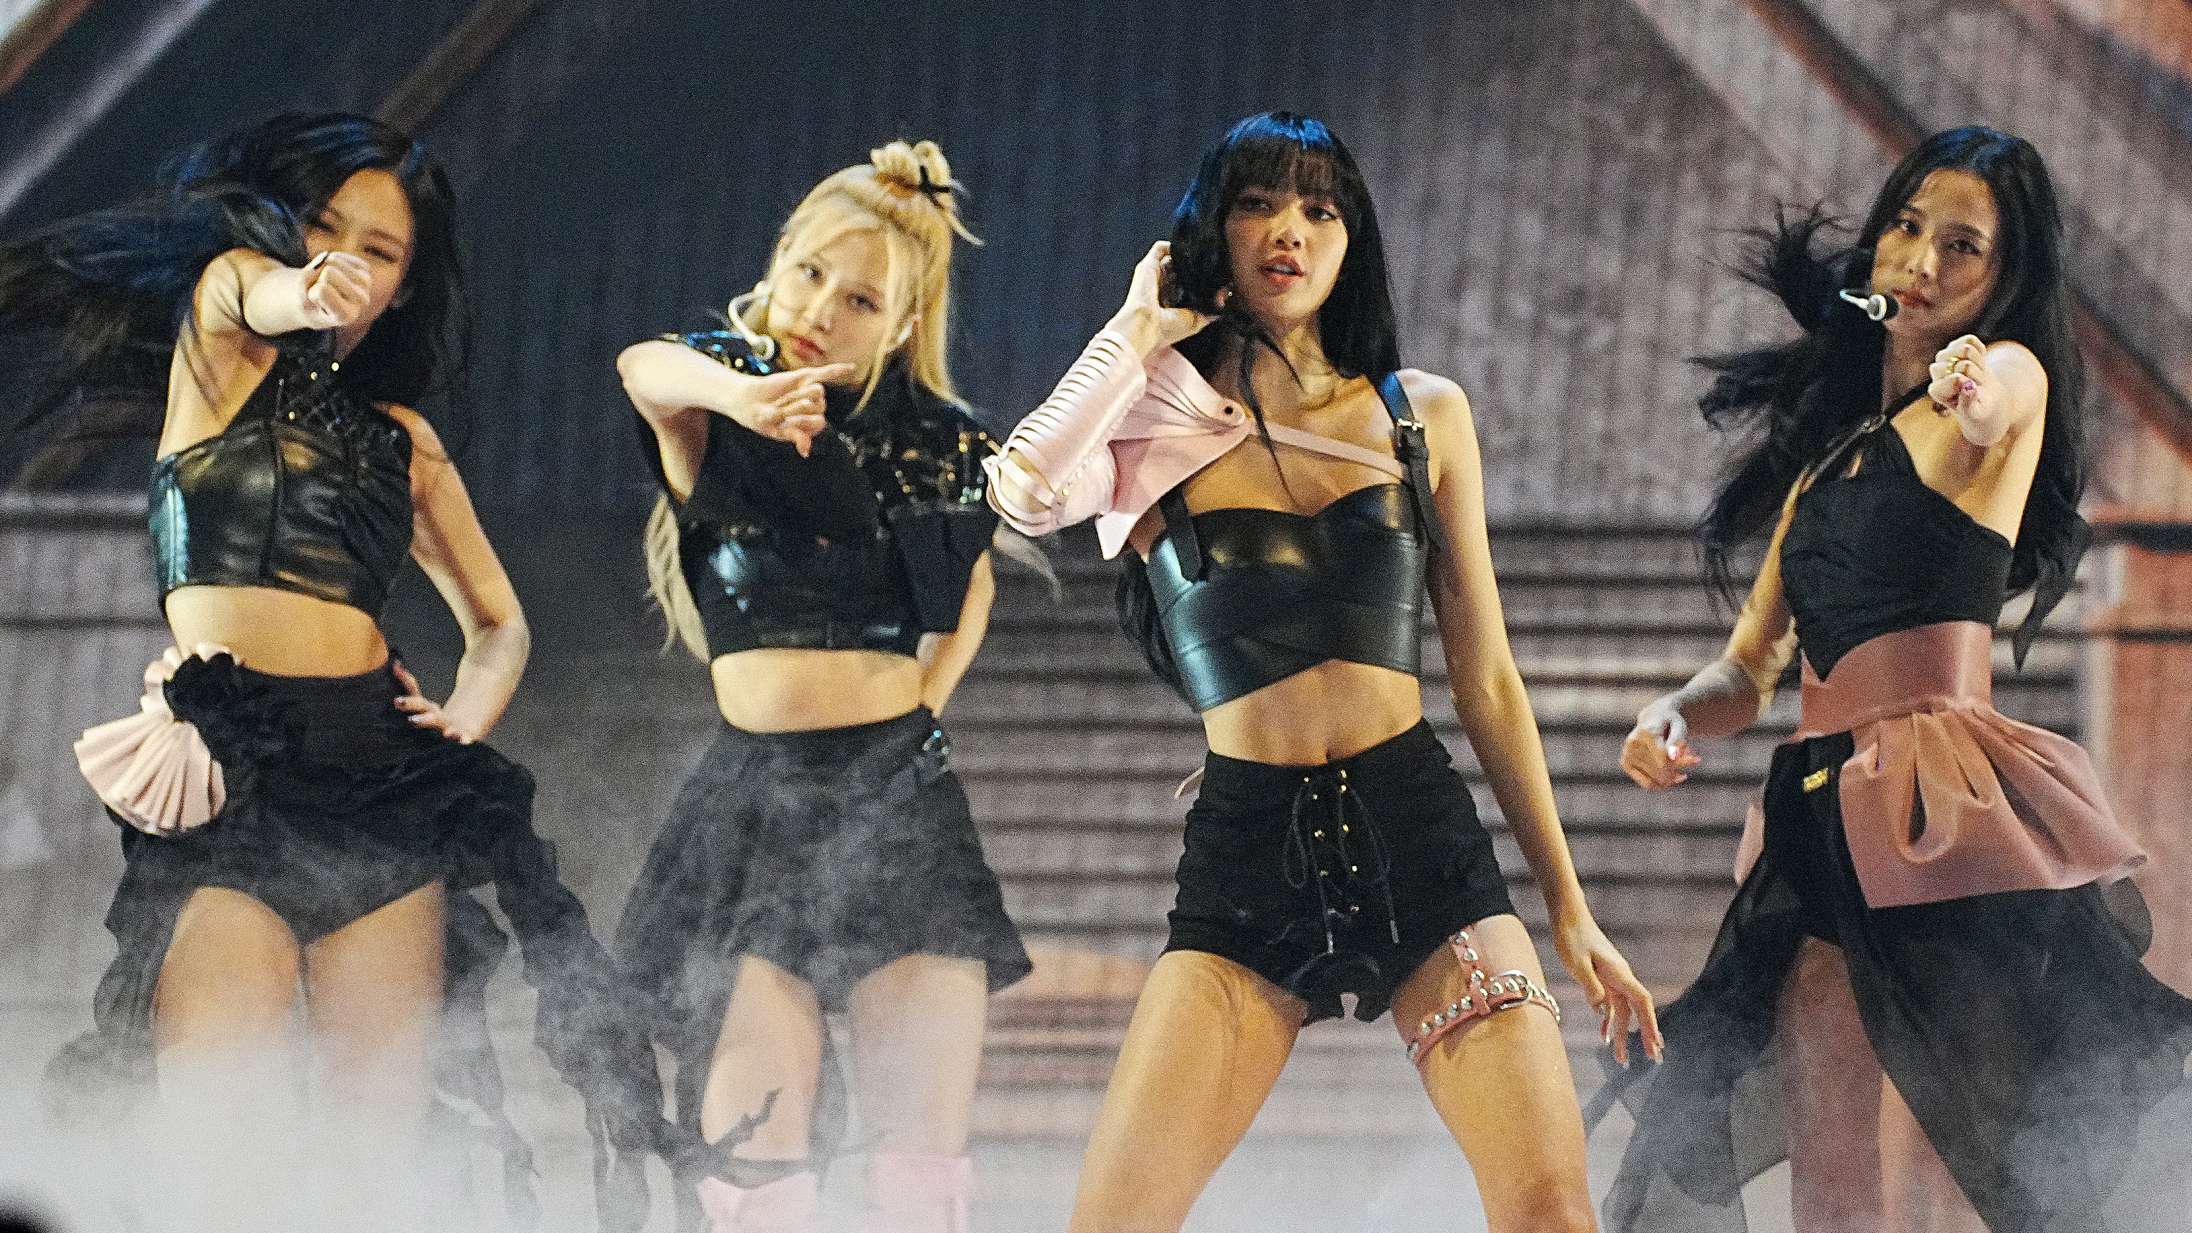 Blackpink er verdens mest populære pigegruppe – deres kraftigt iscenesatte k-pop-fest i Royal Arena viste hvorfor